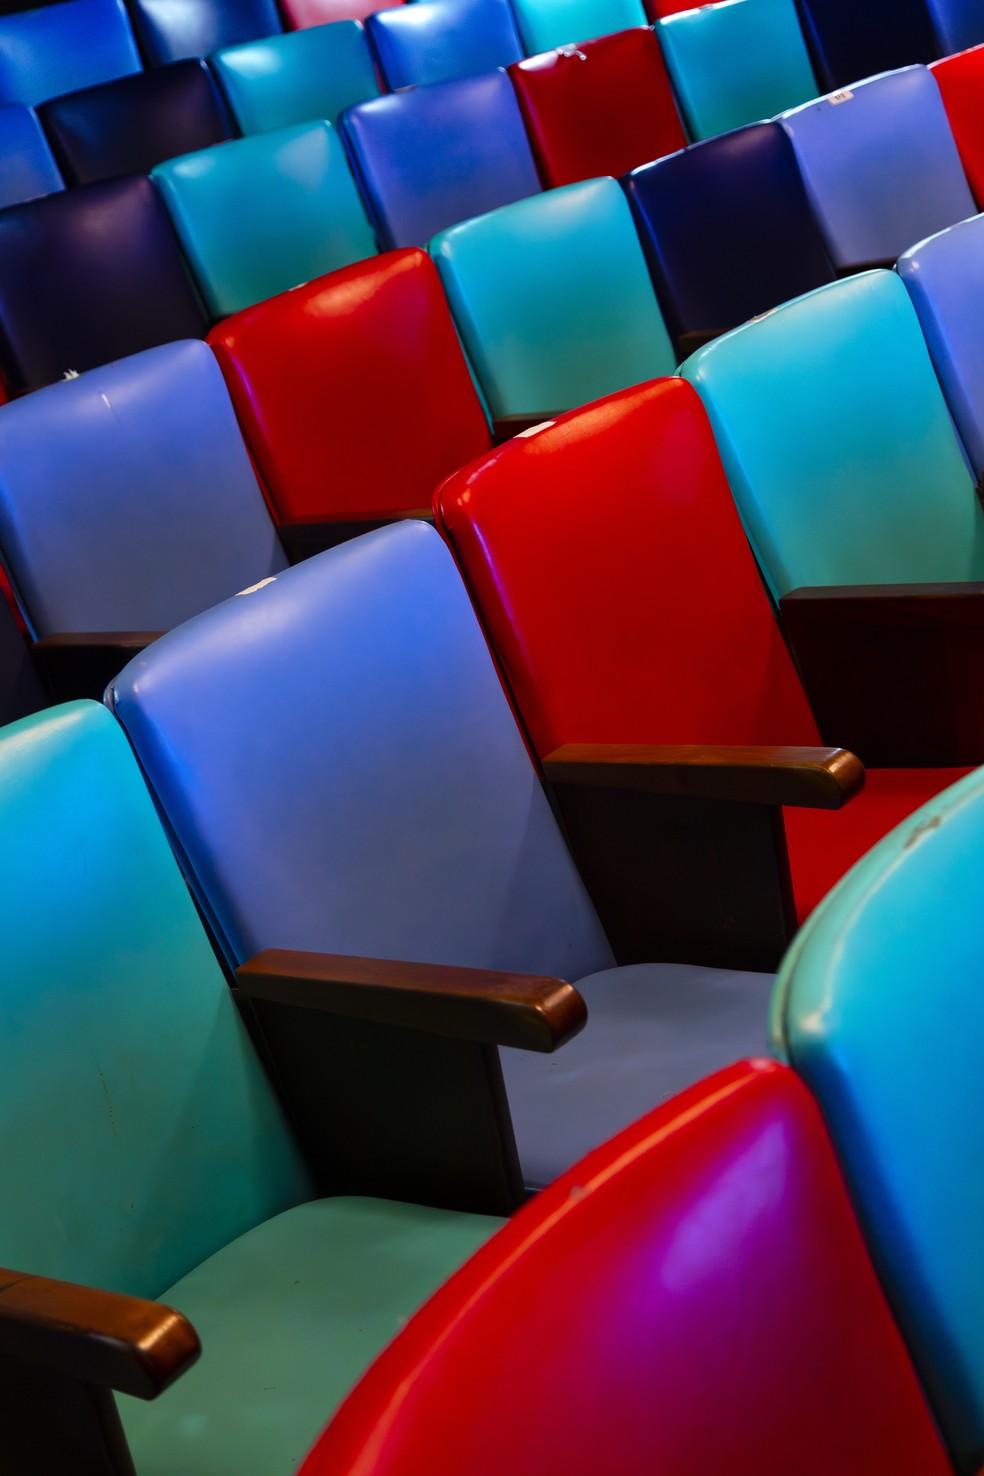 As cadeiras coloridas do Cine Joia, em Copacabana, que volta a exibir filmes nesta quinta-feira, rebatizado de "Cine Teatro Joia" — Foto: Leo Martins / Agencia O Globo